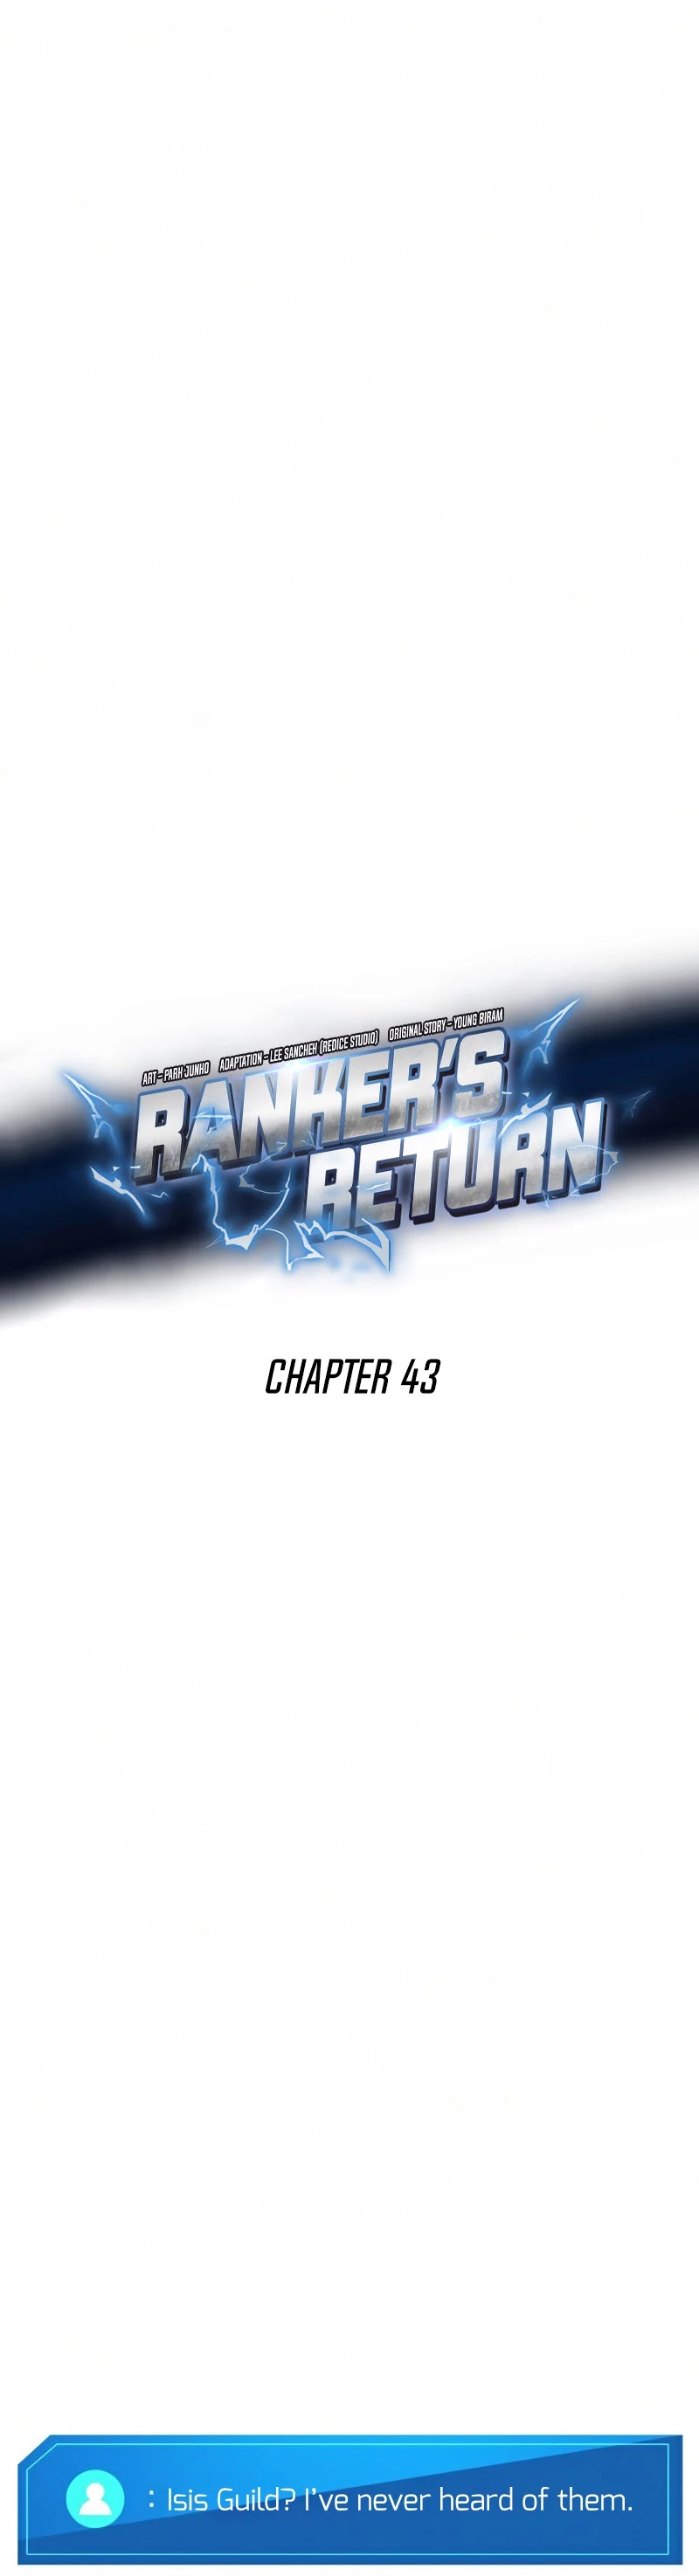 ranker's return remake Chapter 43, ranker's return chapter  43